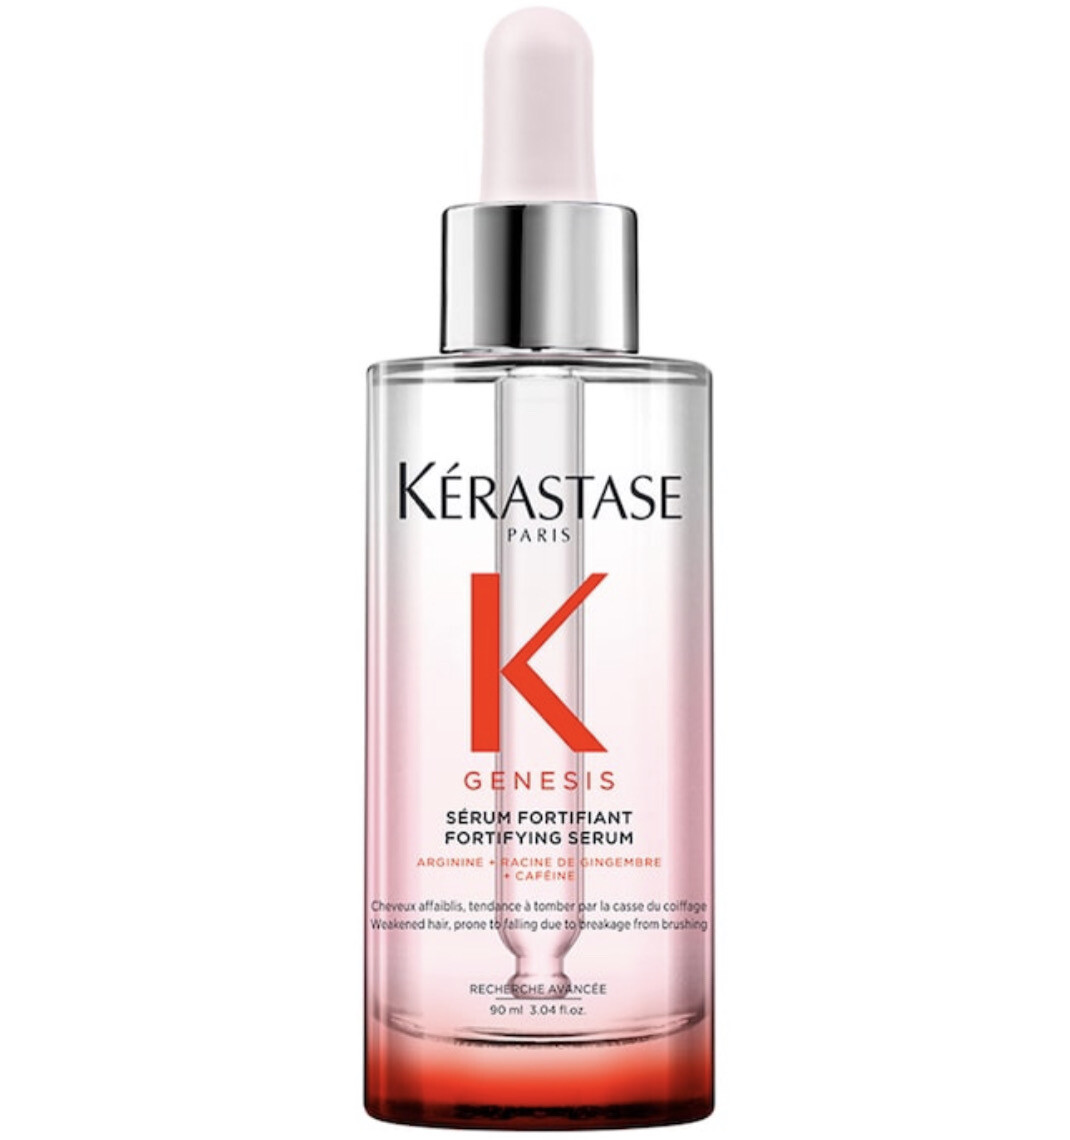 Kérastase - Genesis Fortifying Serum for Hair & Scalp